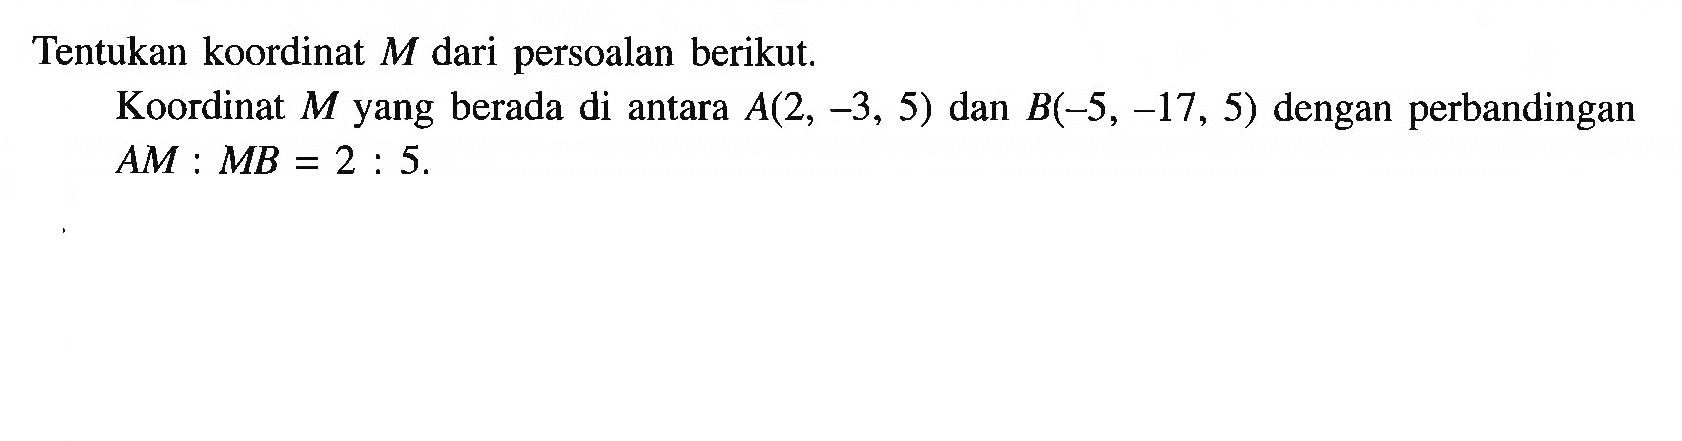 Tentukan koordinat M dari persoalan berikut. Koordinat M yang berada di antara A(2, -3, 5) dan B(-5, -17, 5) dengan perbandingan AM : MB = 2 : 5.